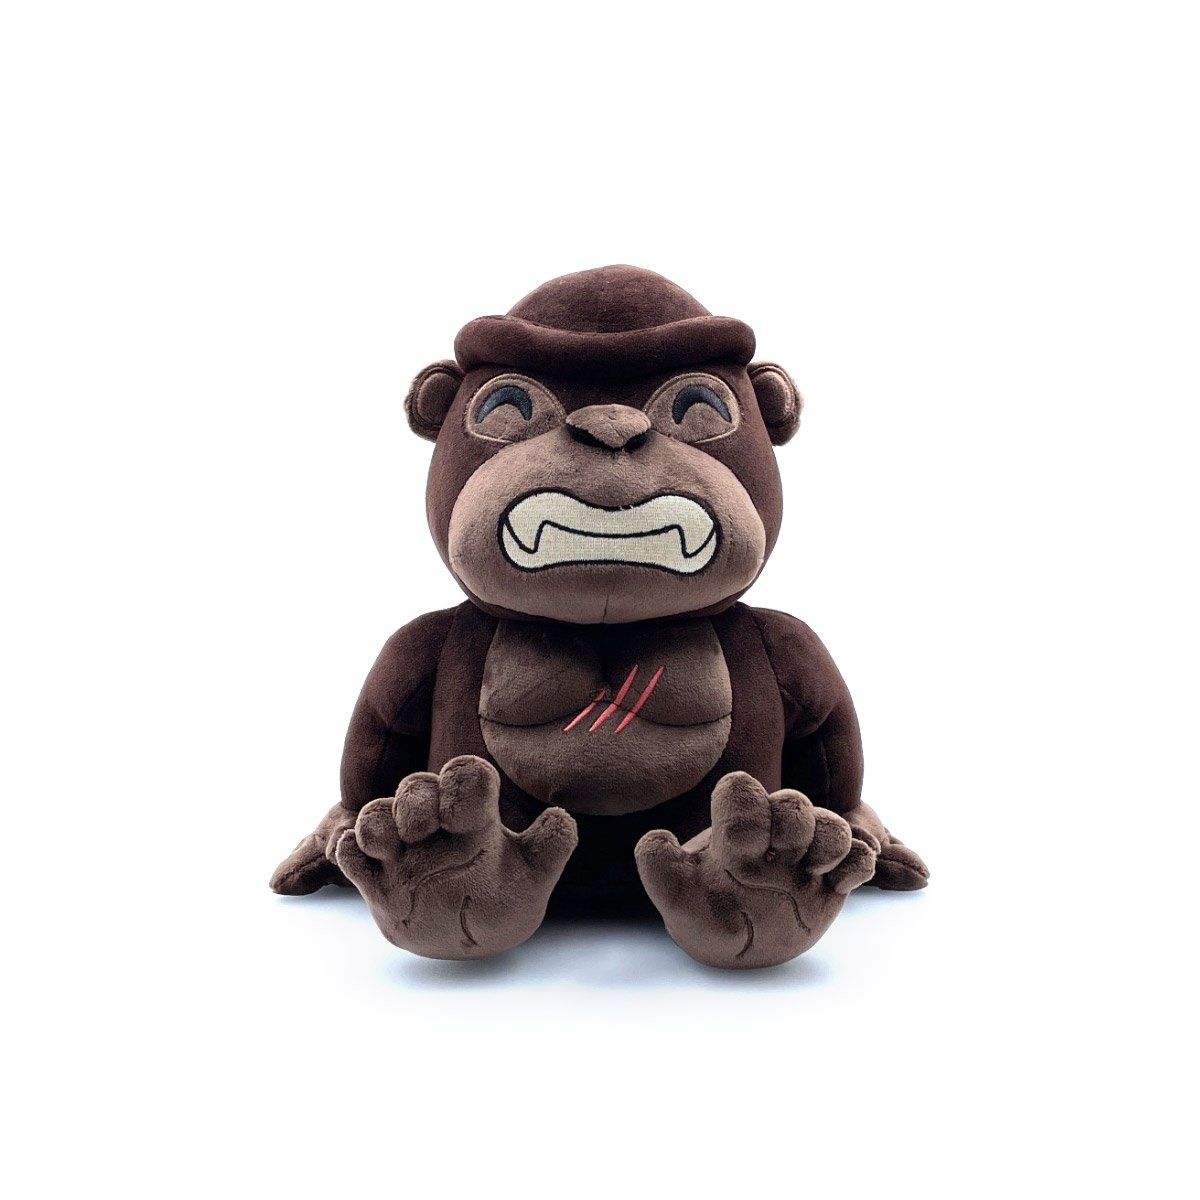 Kong Plush (9in) | The Youtooz Wiki | Fandom